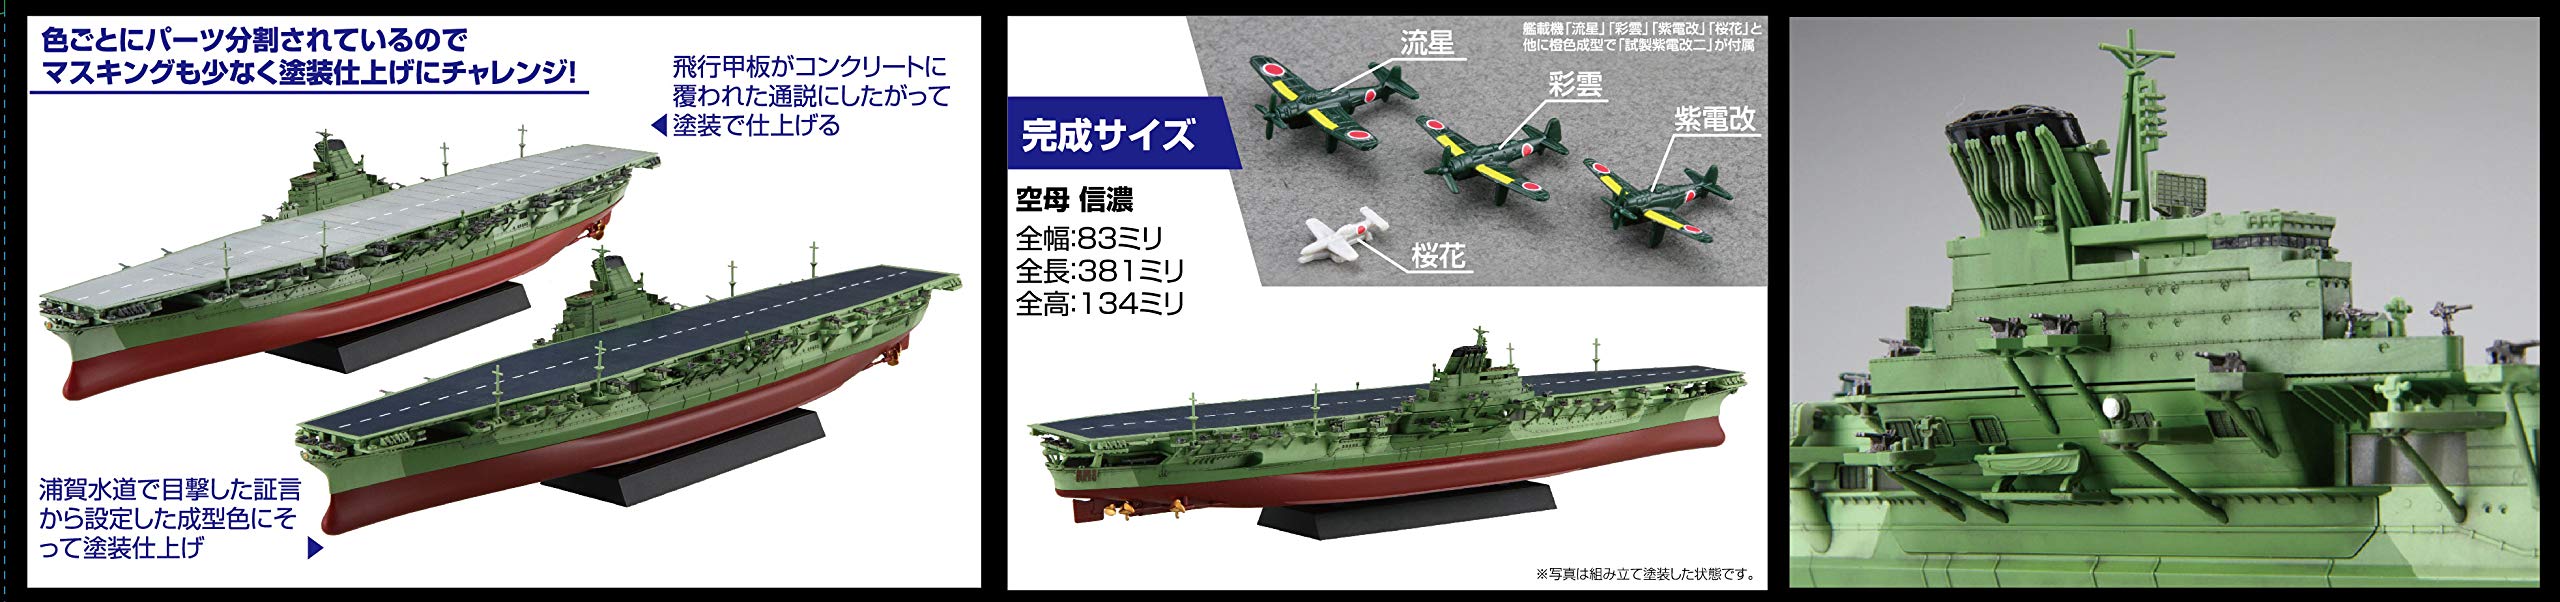 Fujimi Modèle 1/700 Navire Next Series No.8 Ex-2 Porte-avions de la marine japonaise Shinano (pont en béton) Navire Nx-8 Ex-2